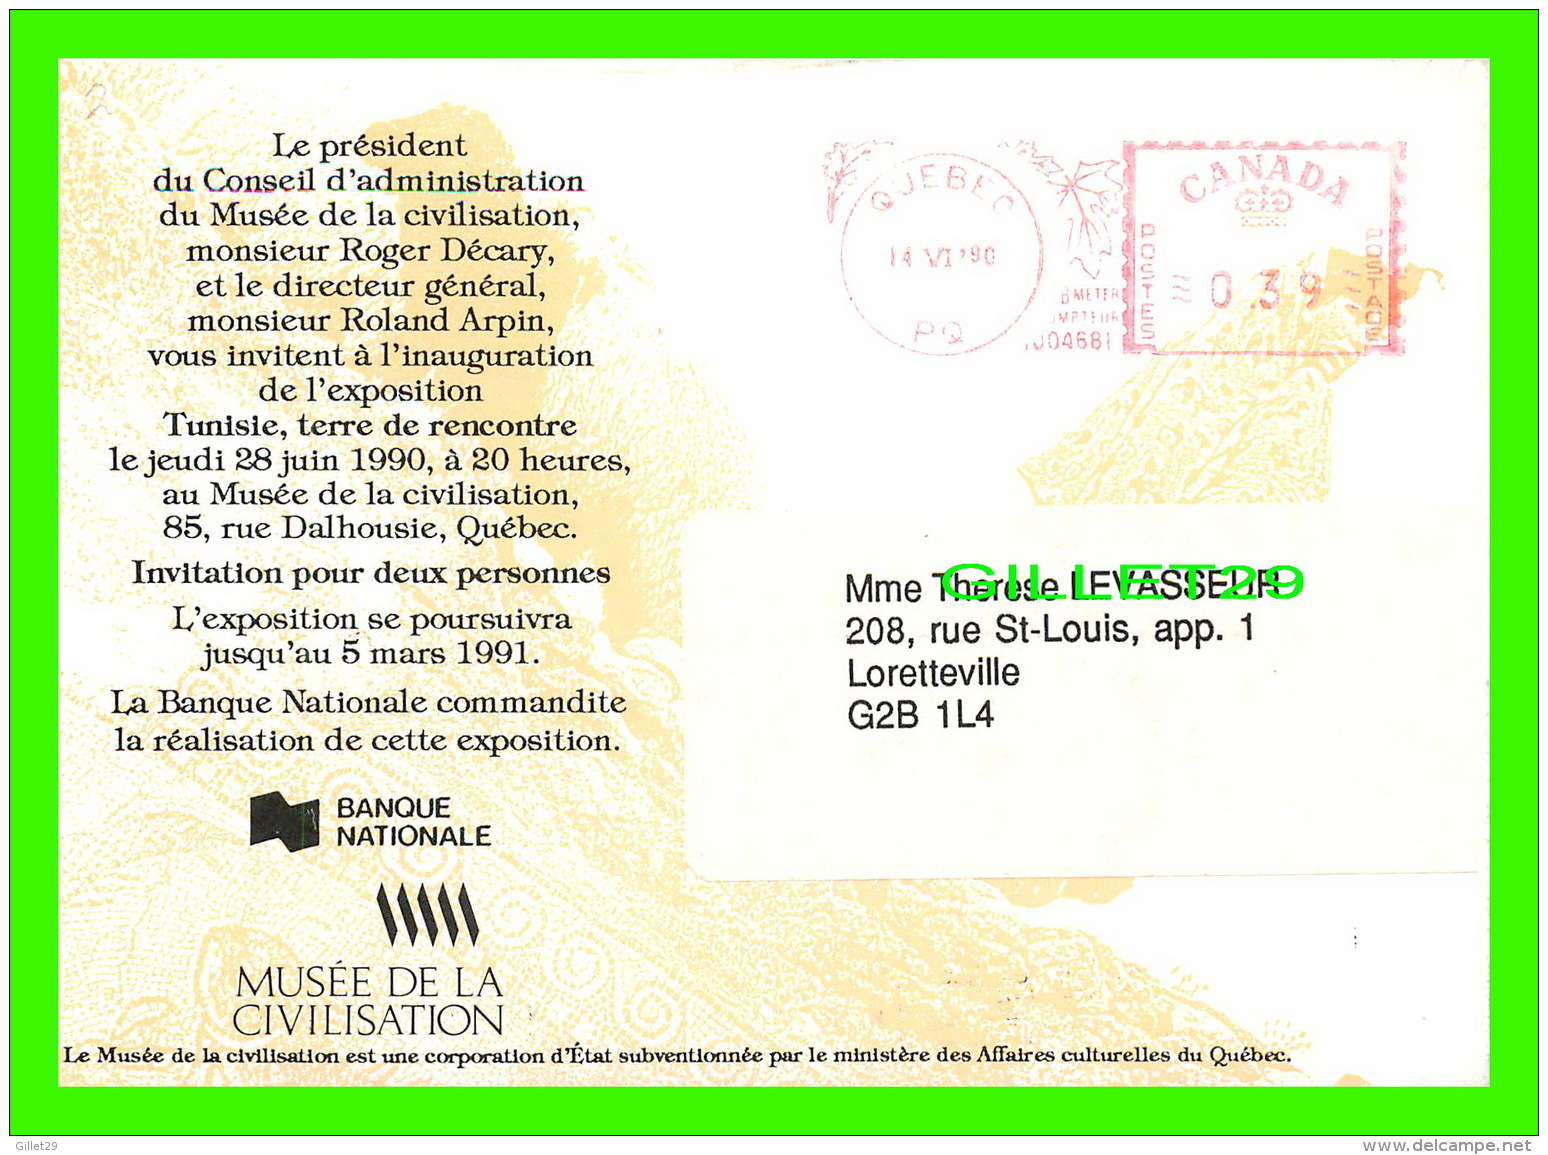 ADVERTISING, PUBLICITÉ - MUSÉE DE LA CIVILISATION DE QUÉBEC PRÉSENTE, TUNISIE, TERRE DE RENCONTRE EN 1990 - - Advertising